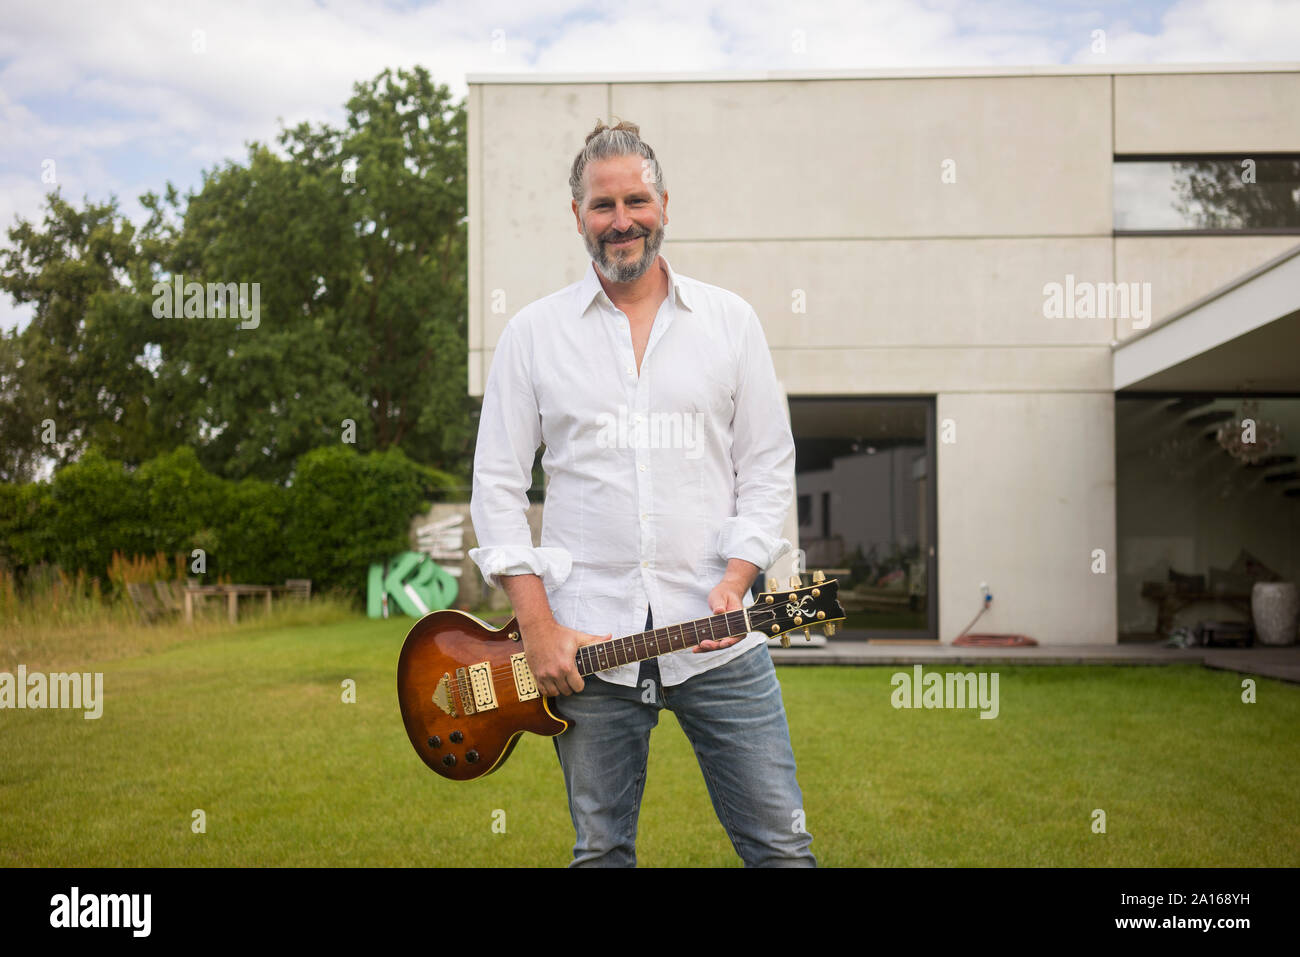 Portrait of mature homme debout sur la pelouse devant sa maison holding guitar Banque D'Images